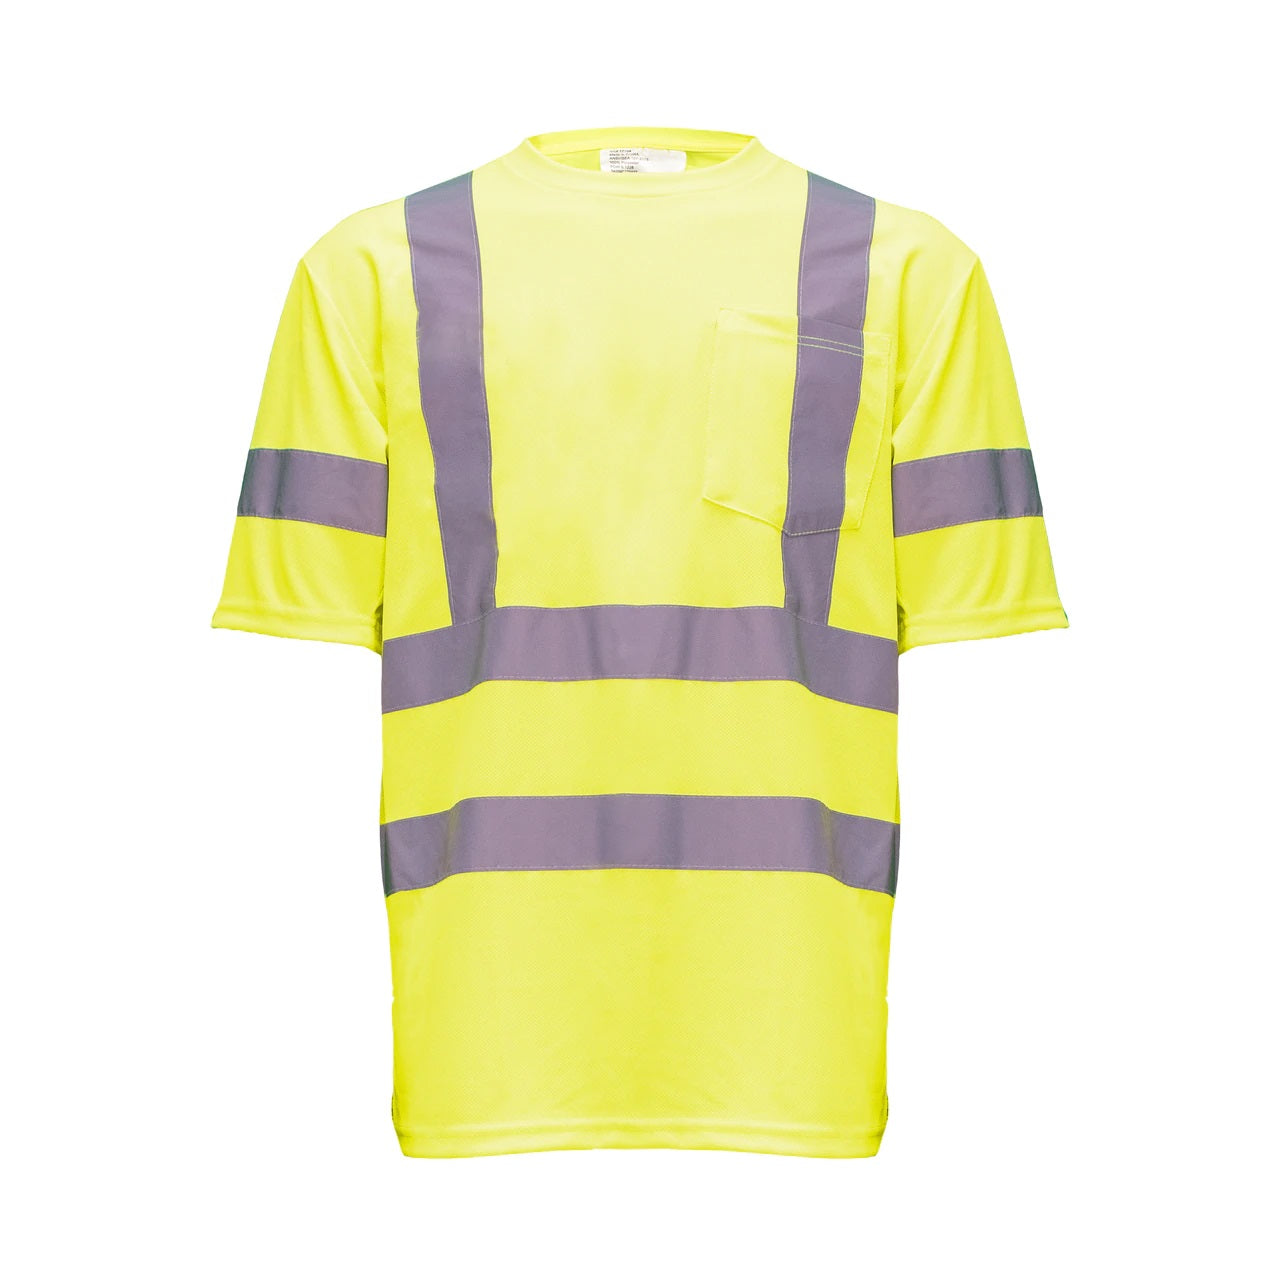 'KEY' Men's Hi-Visibility Pocket T-Shirt - Hi-Vis Yellow